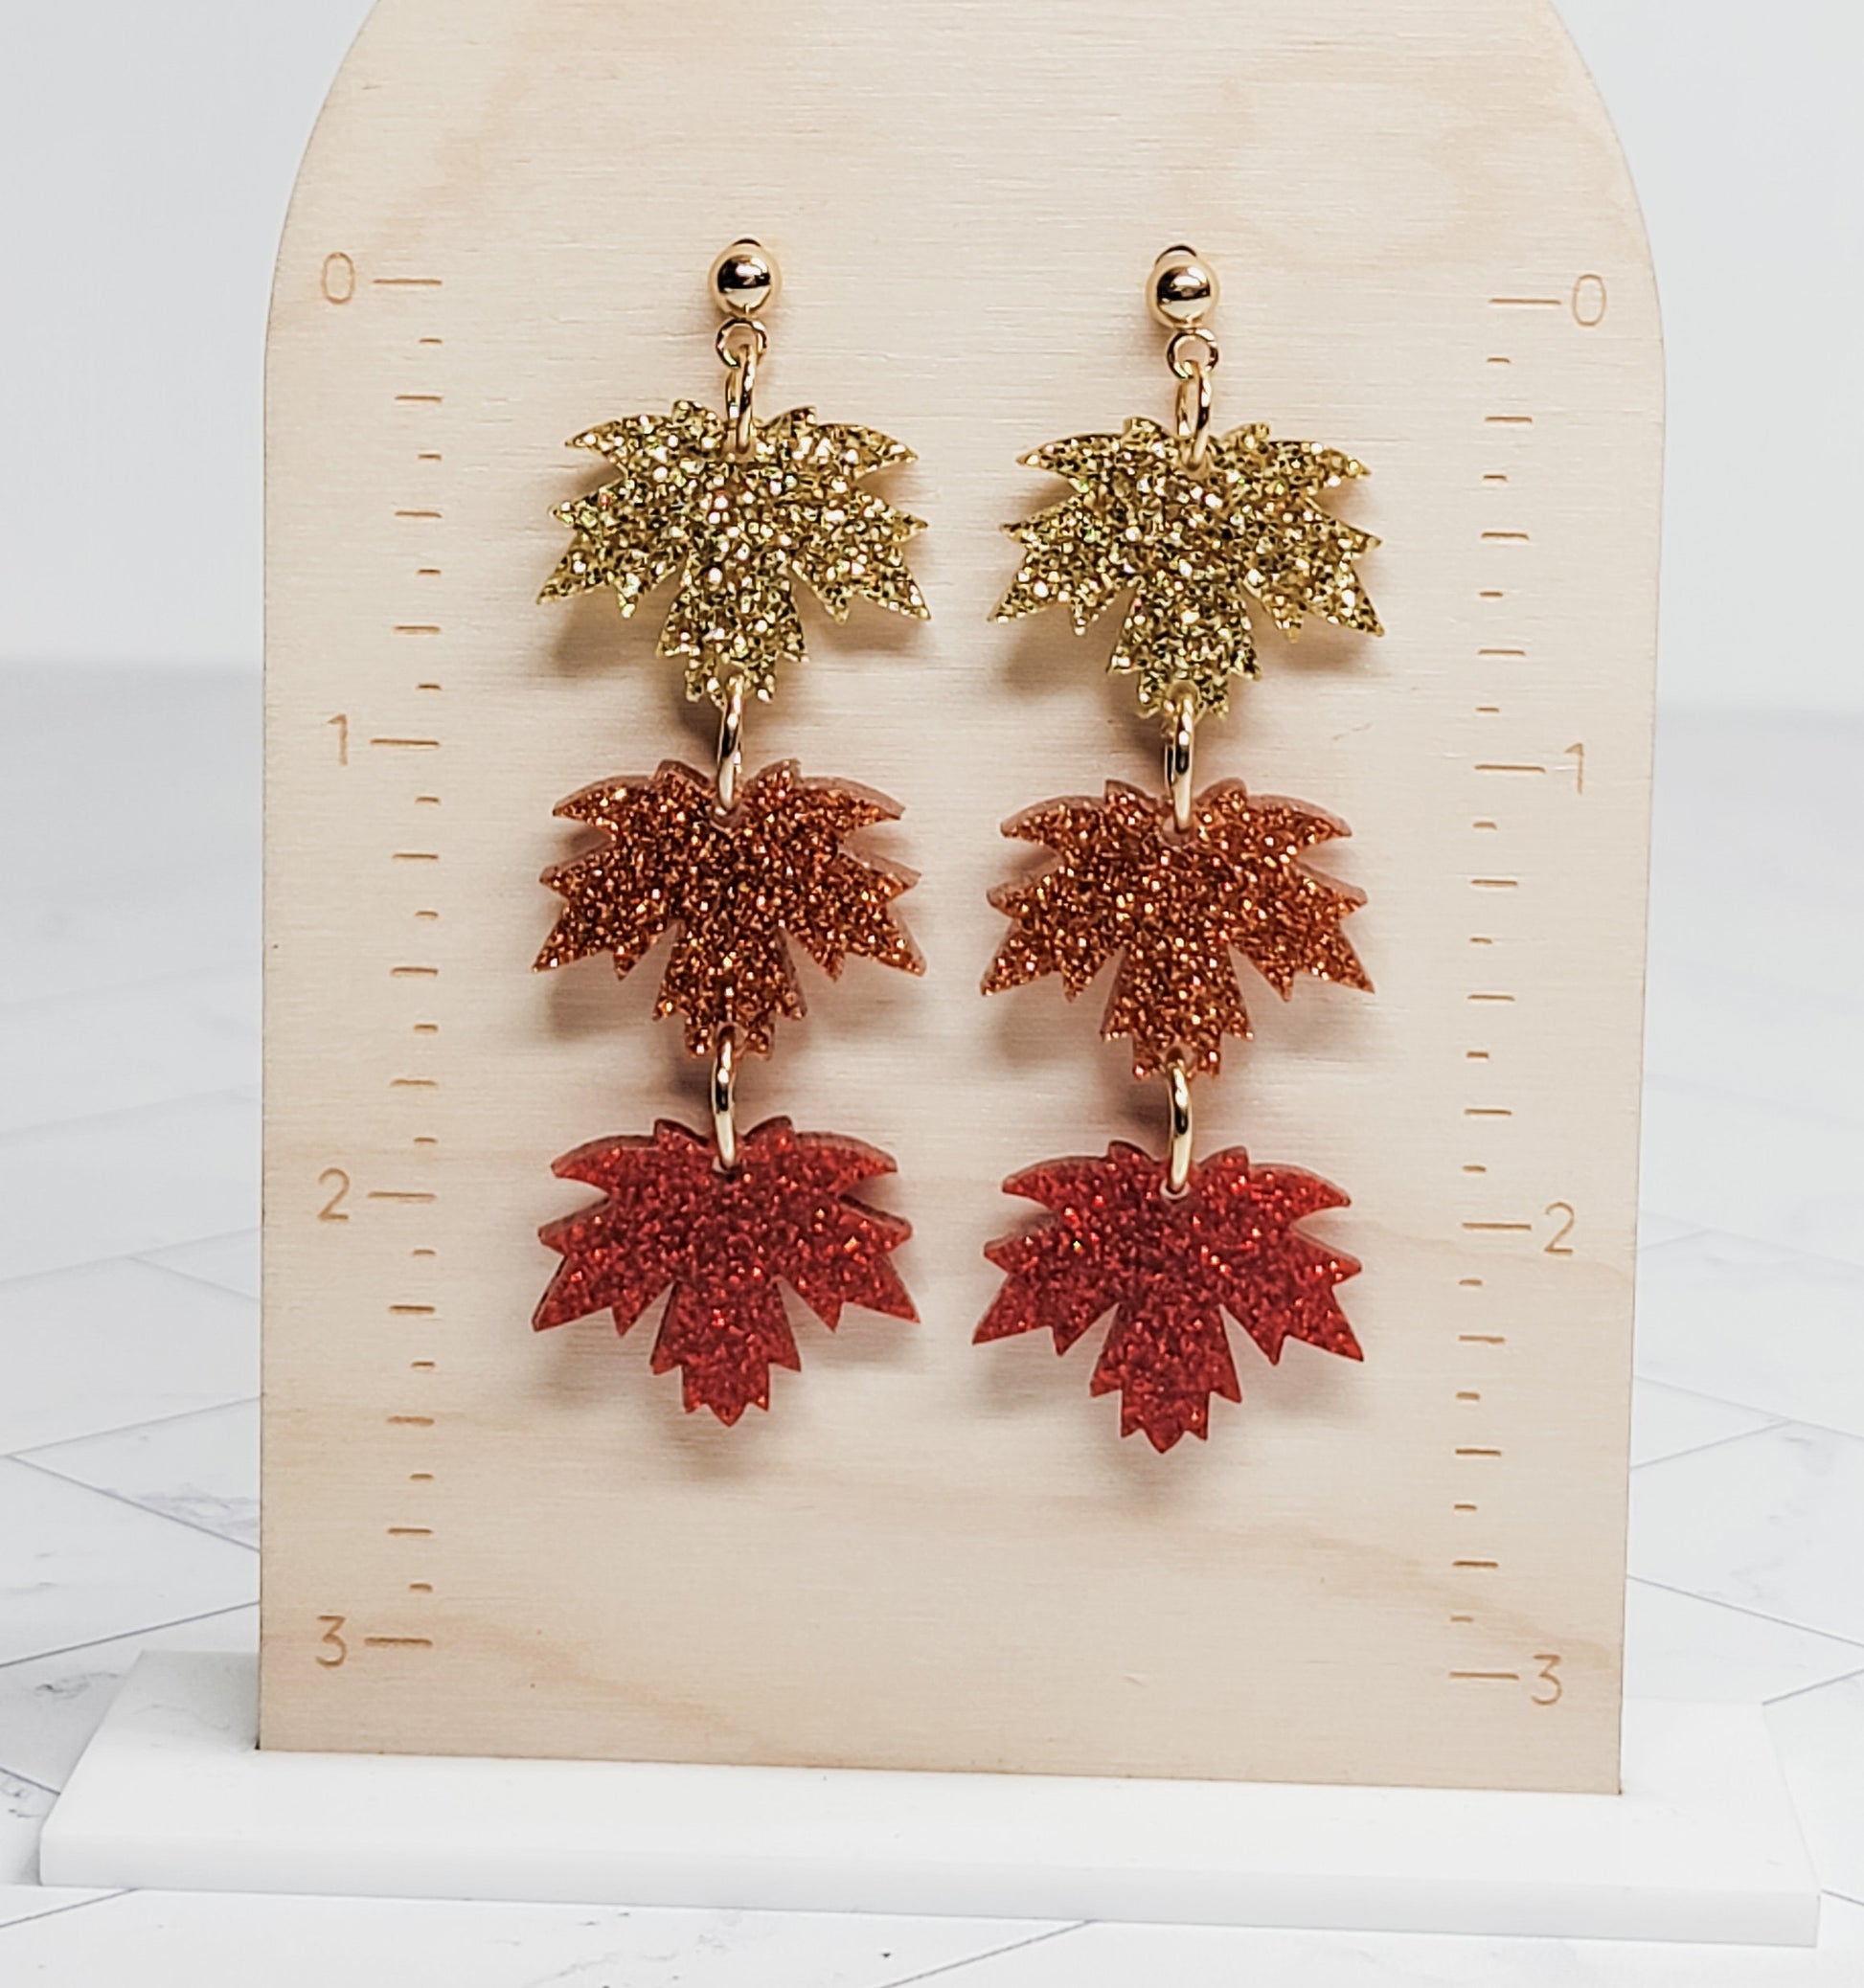 Stacked Maple Leaf Acrylic Earrings, Glitter Leaf Earring, Fall Jewelry, Leaf Dangles, Ball Studs